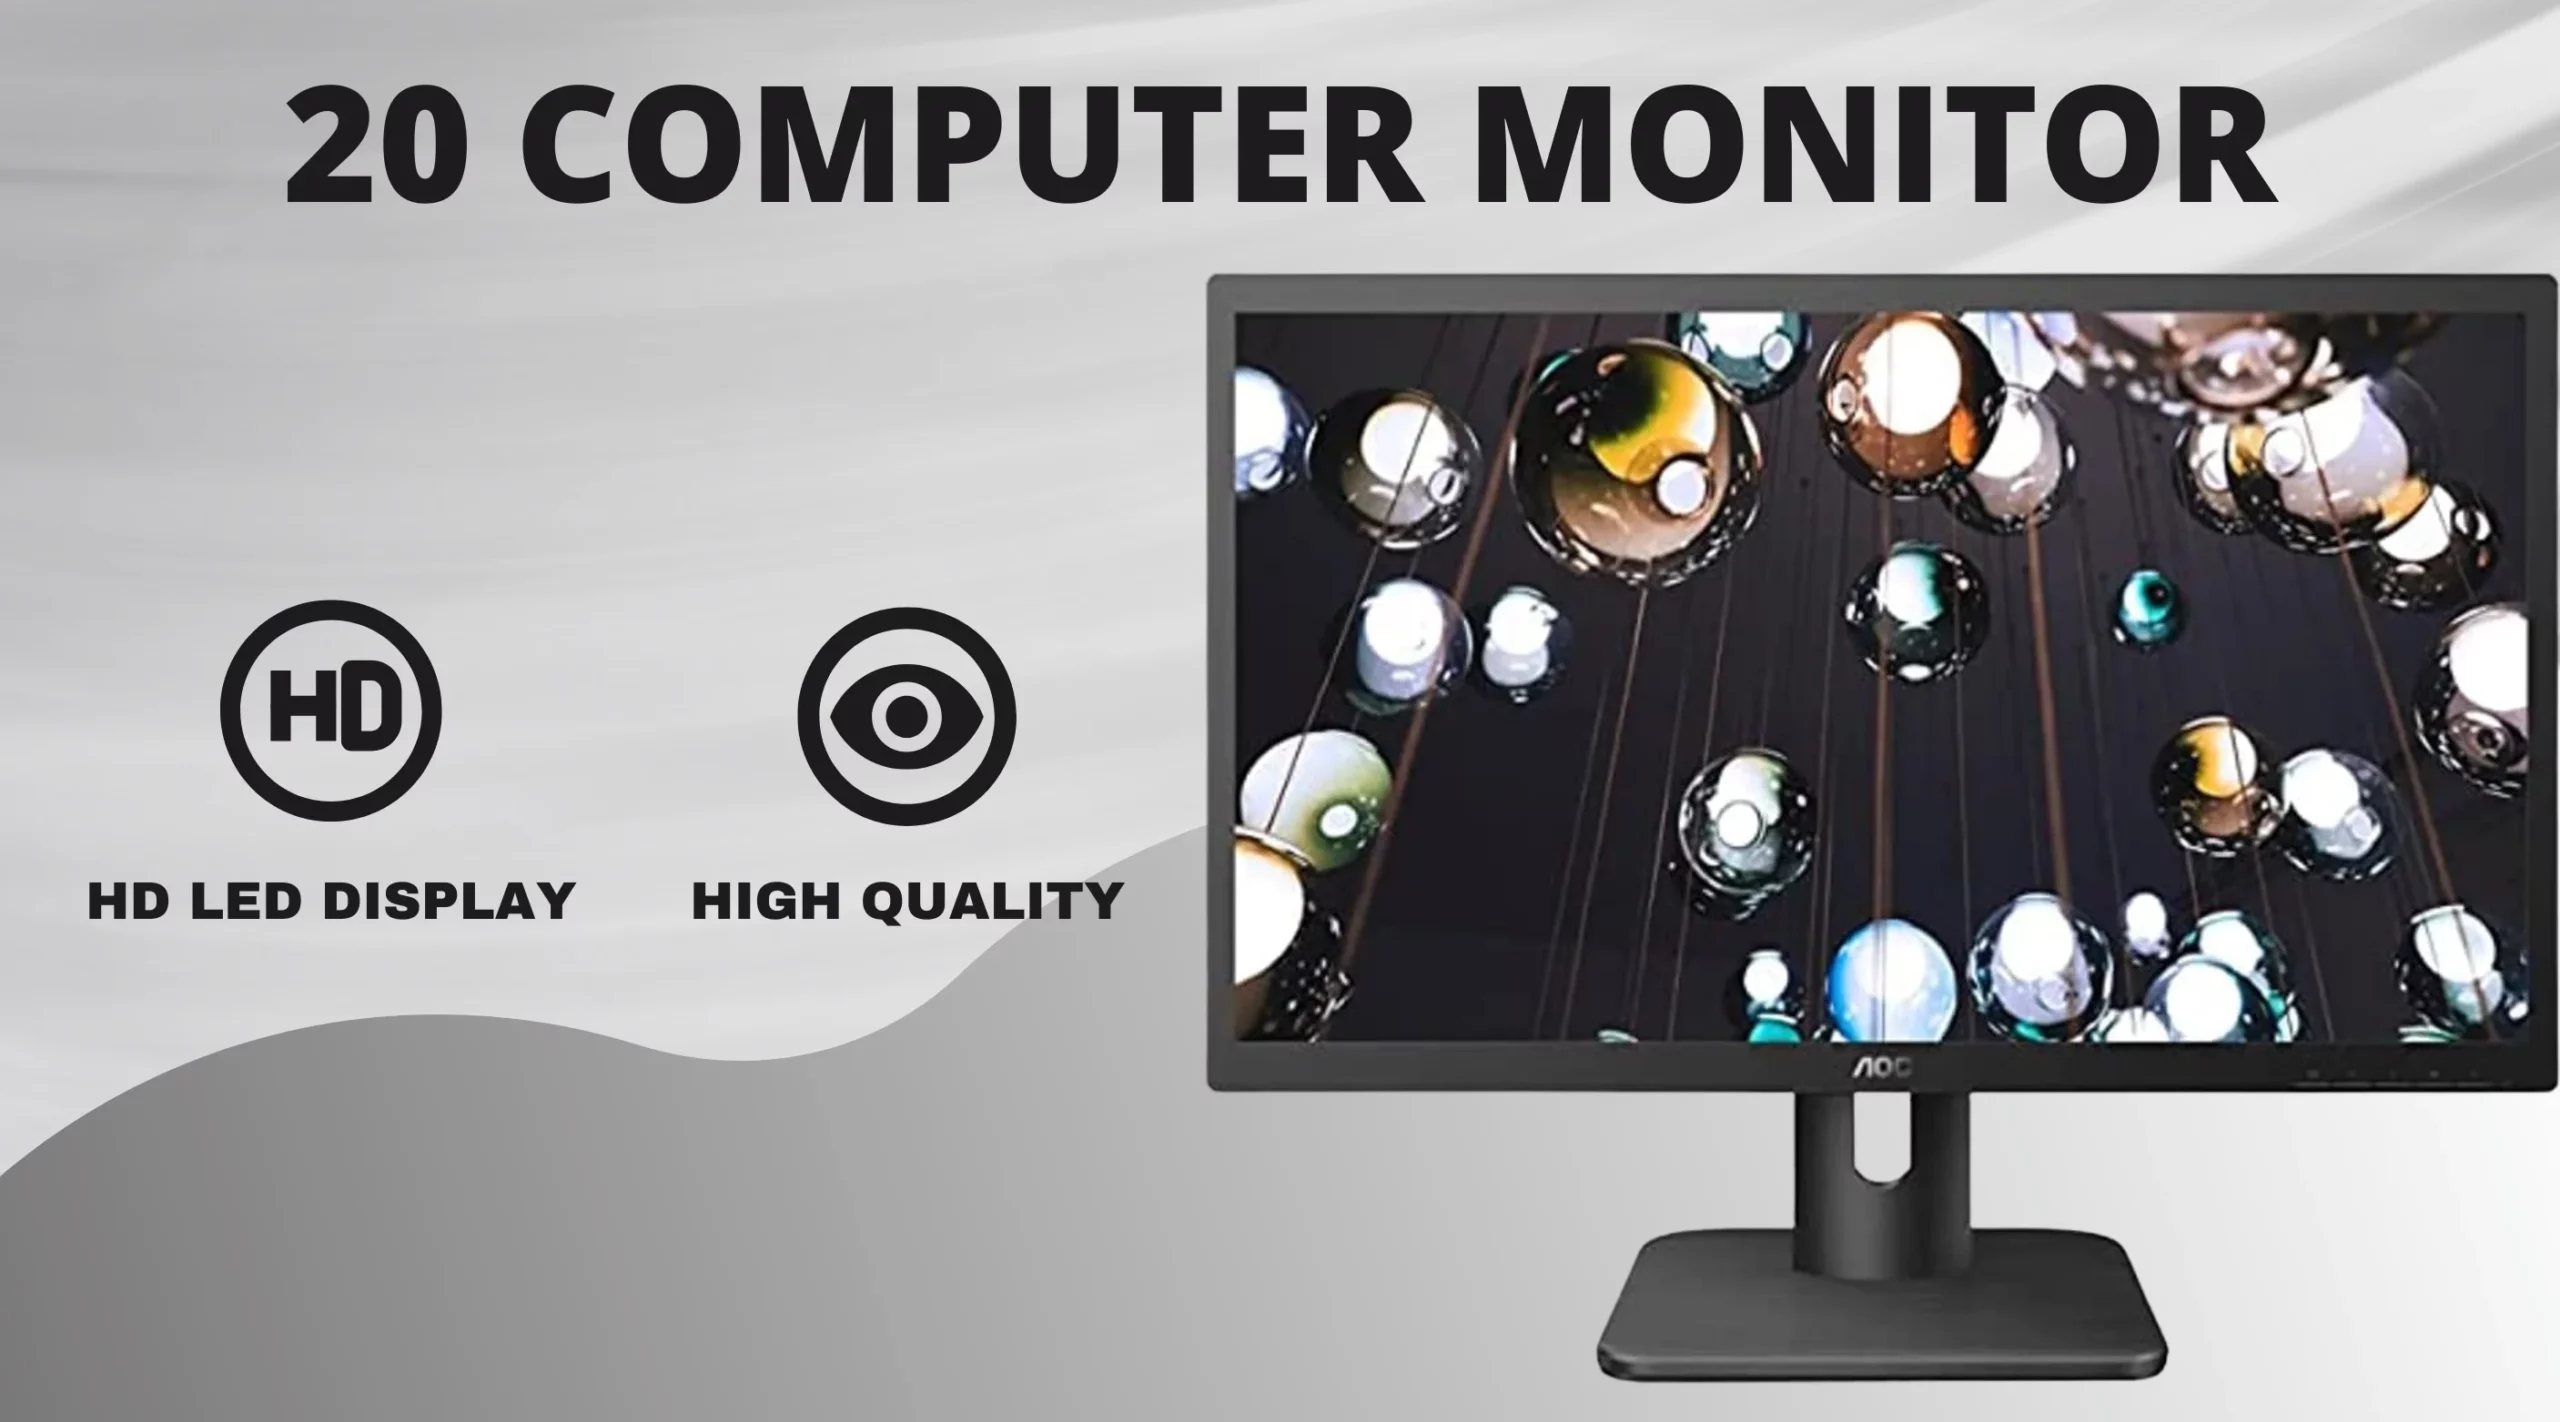 20 Computer Monitor